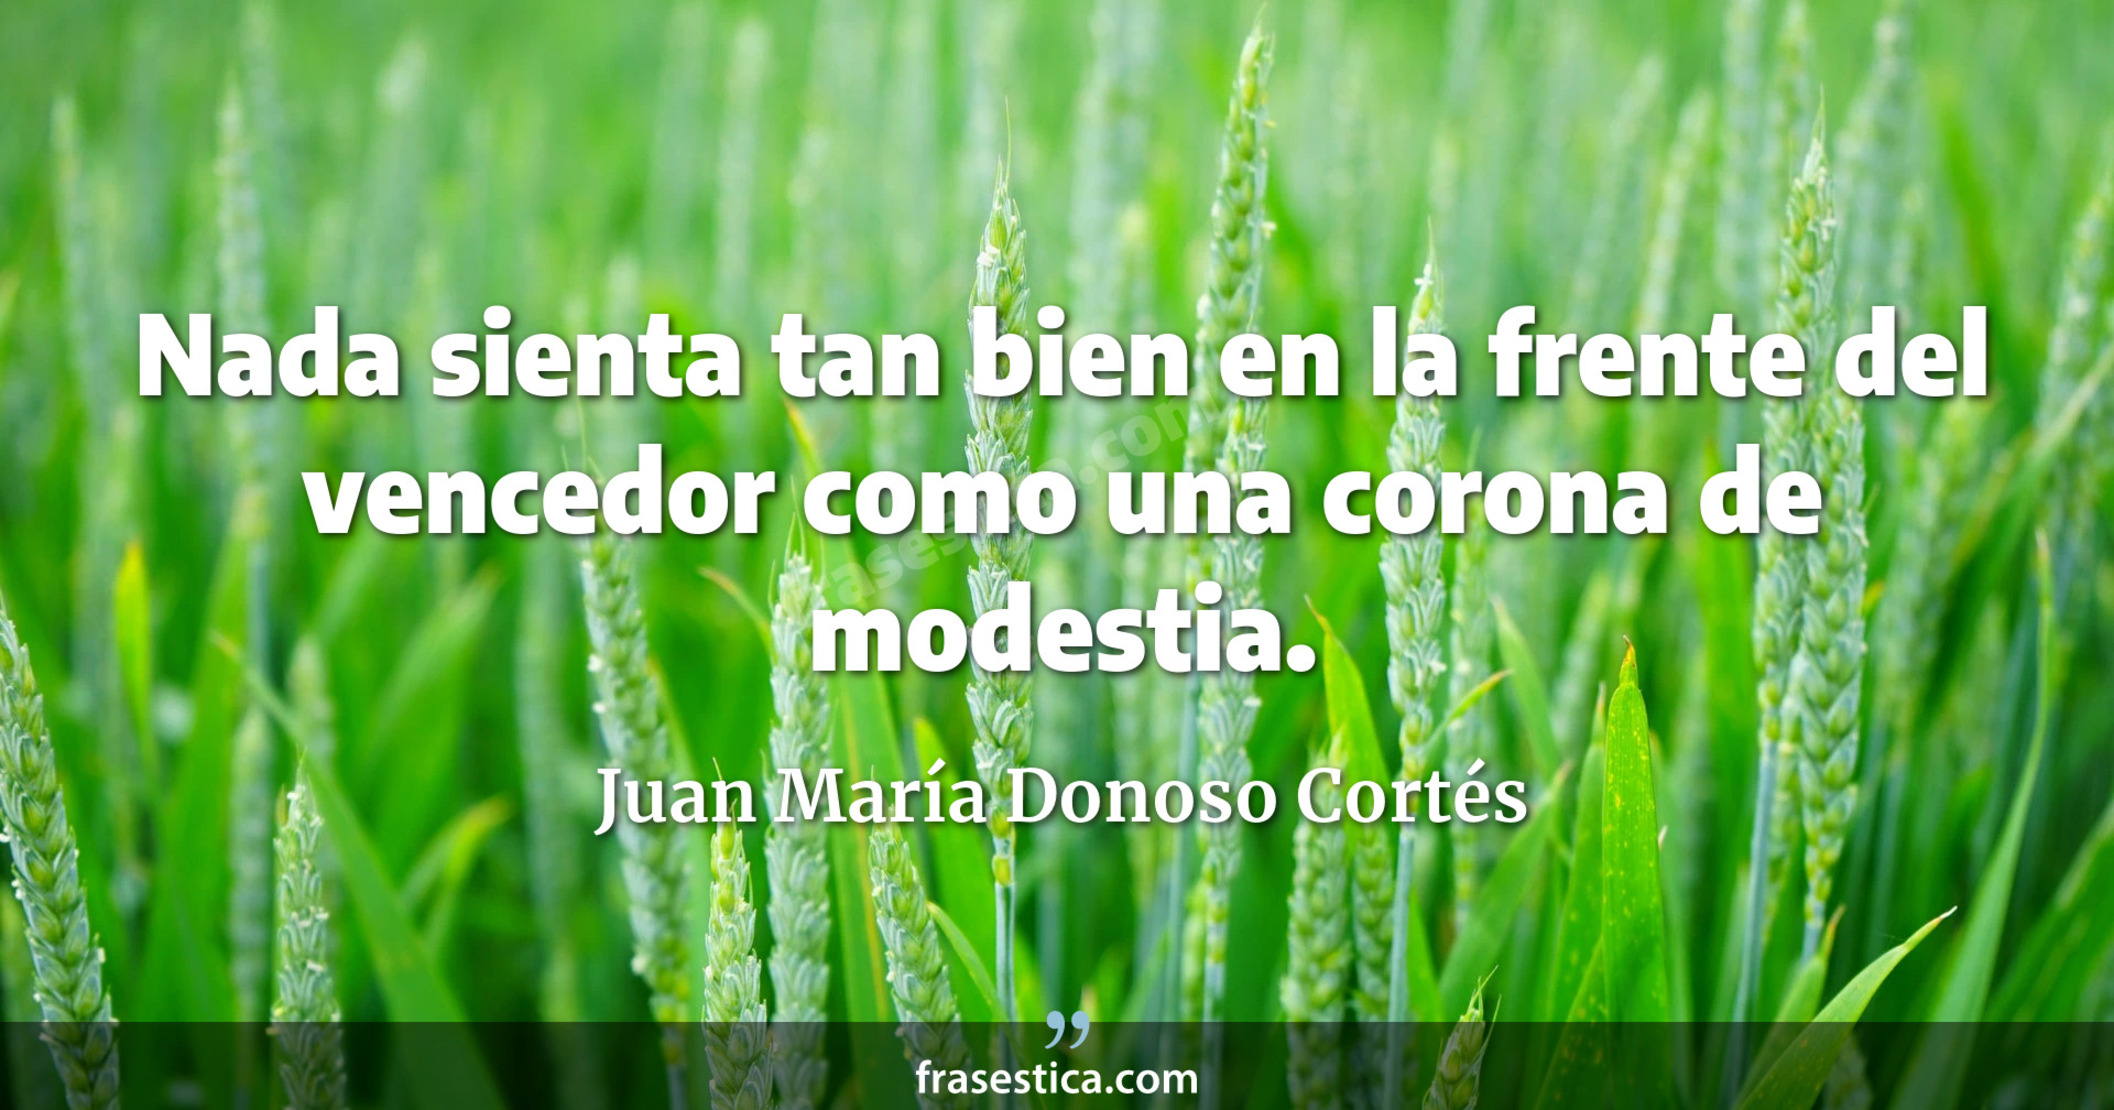 Nada sienta tan bien en la frente del vencedor como una corona de modestia. - Juan María Donoso Cortés